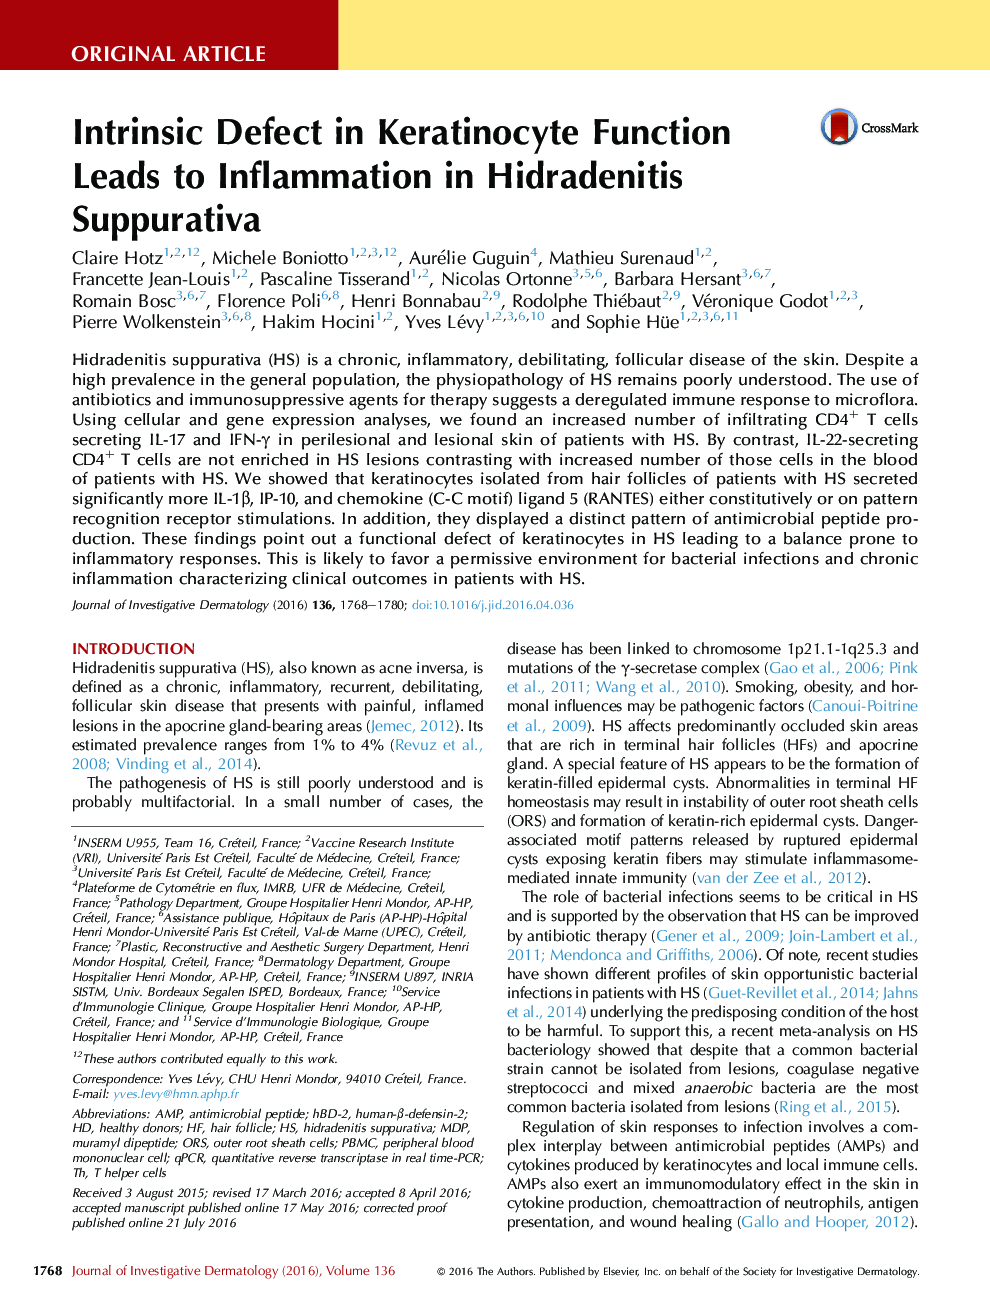 نقص ذاتی در عملکرد کراتینوسیت باعث التهاب در هیدرادنیت سوپوراتیوا می شود 